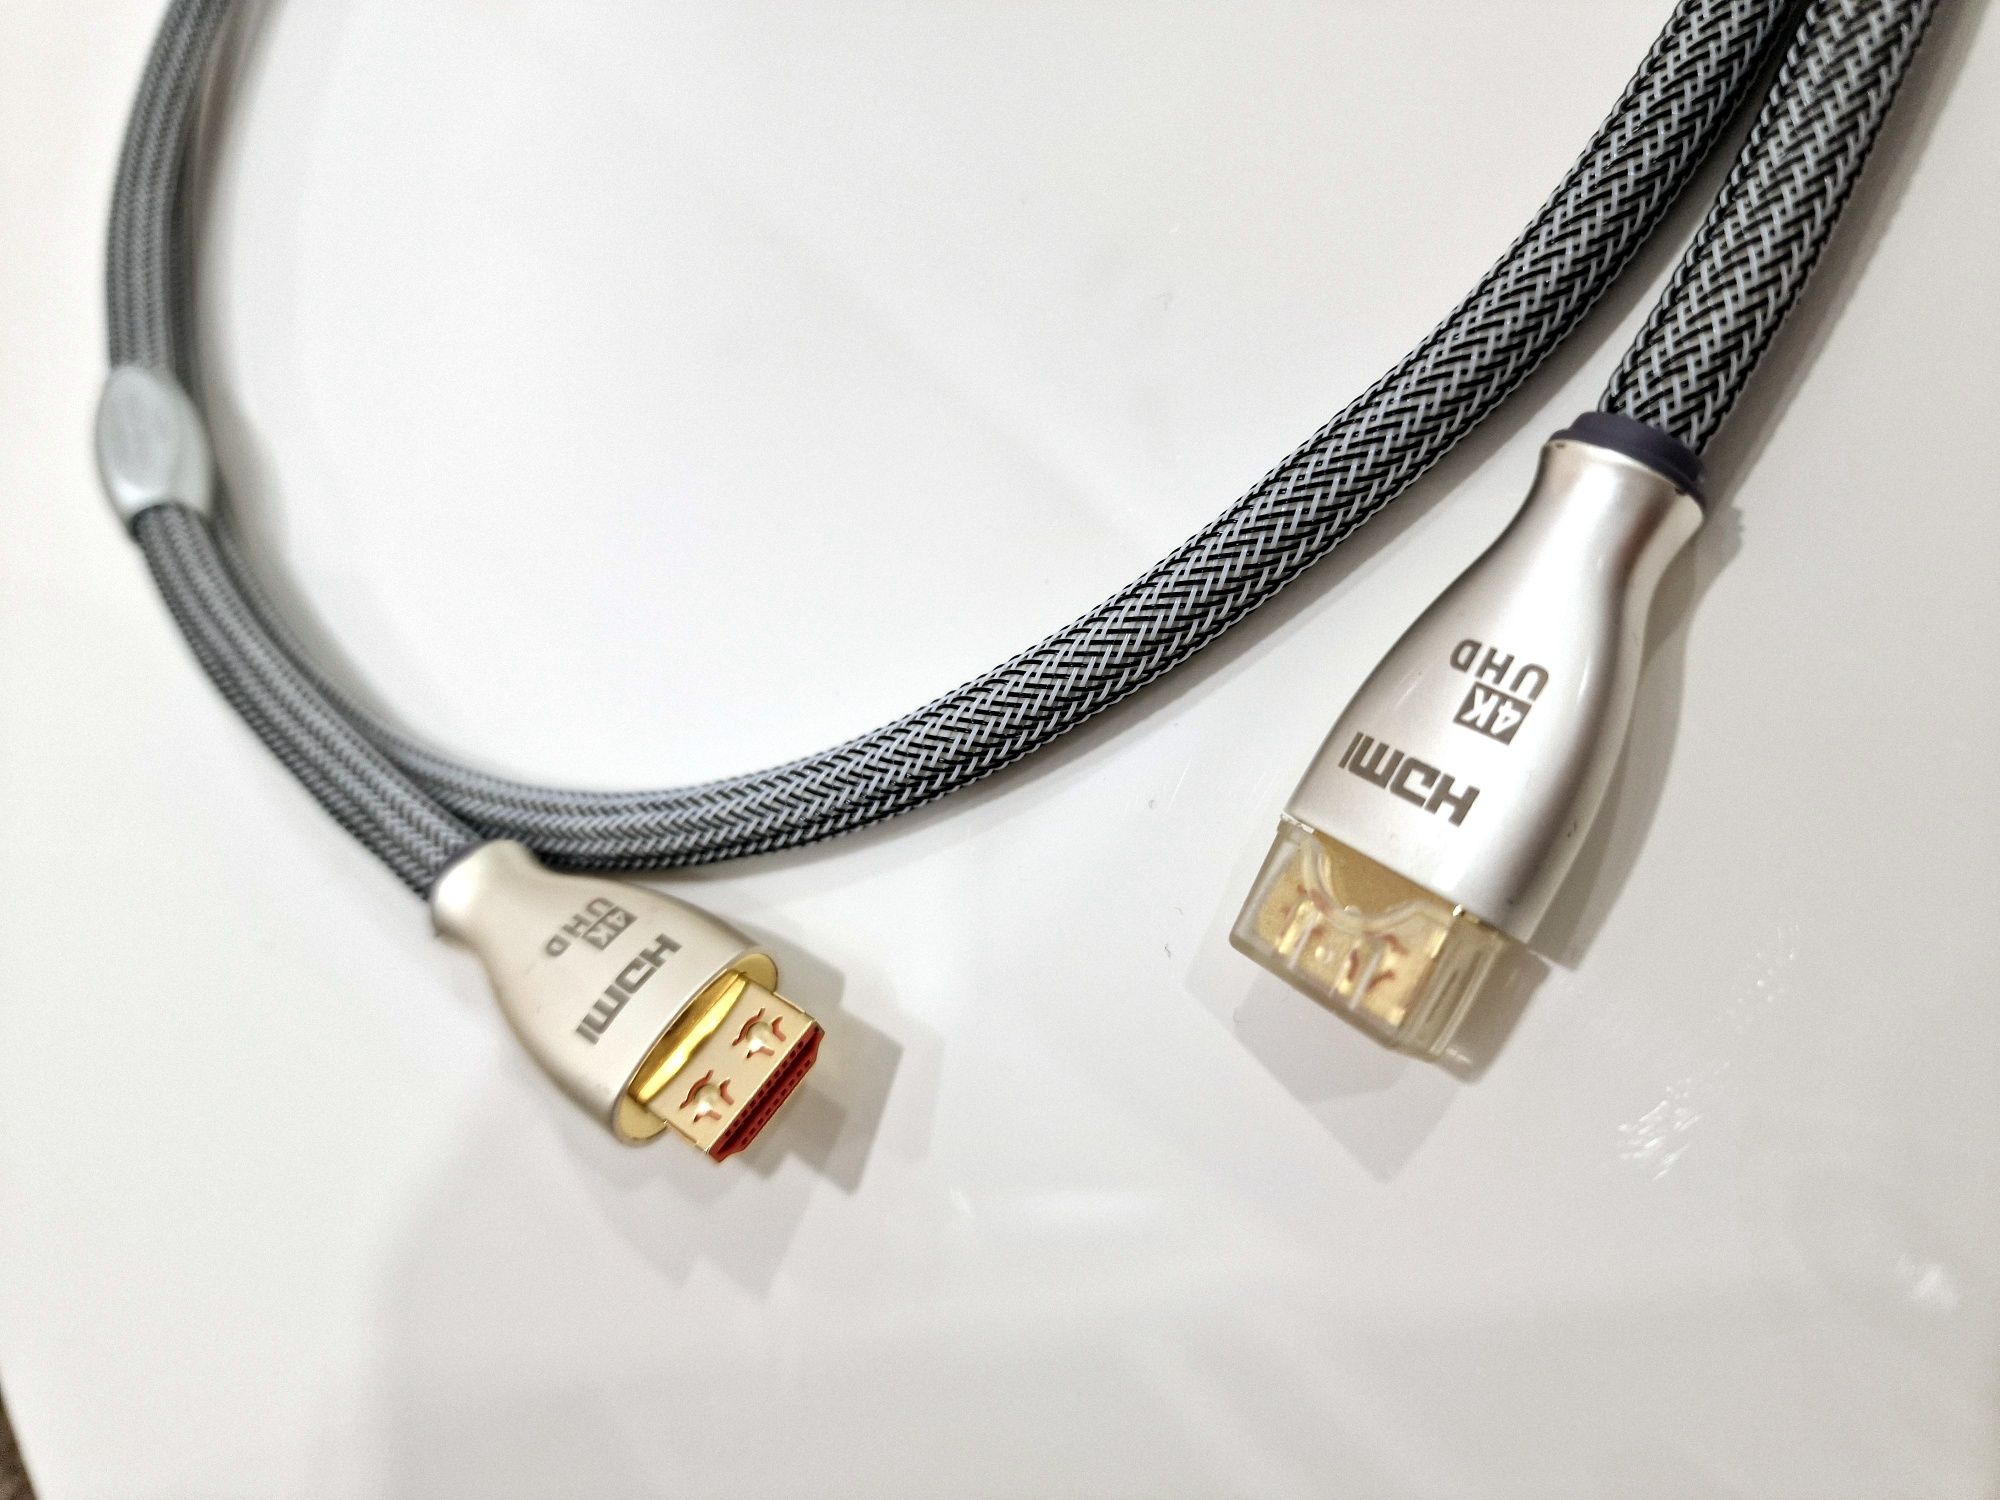 Cablu Hdmi 4k calitate superioara